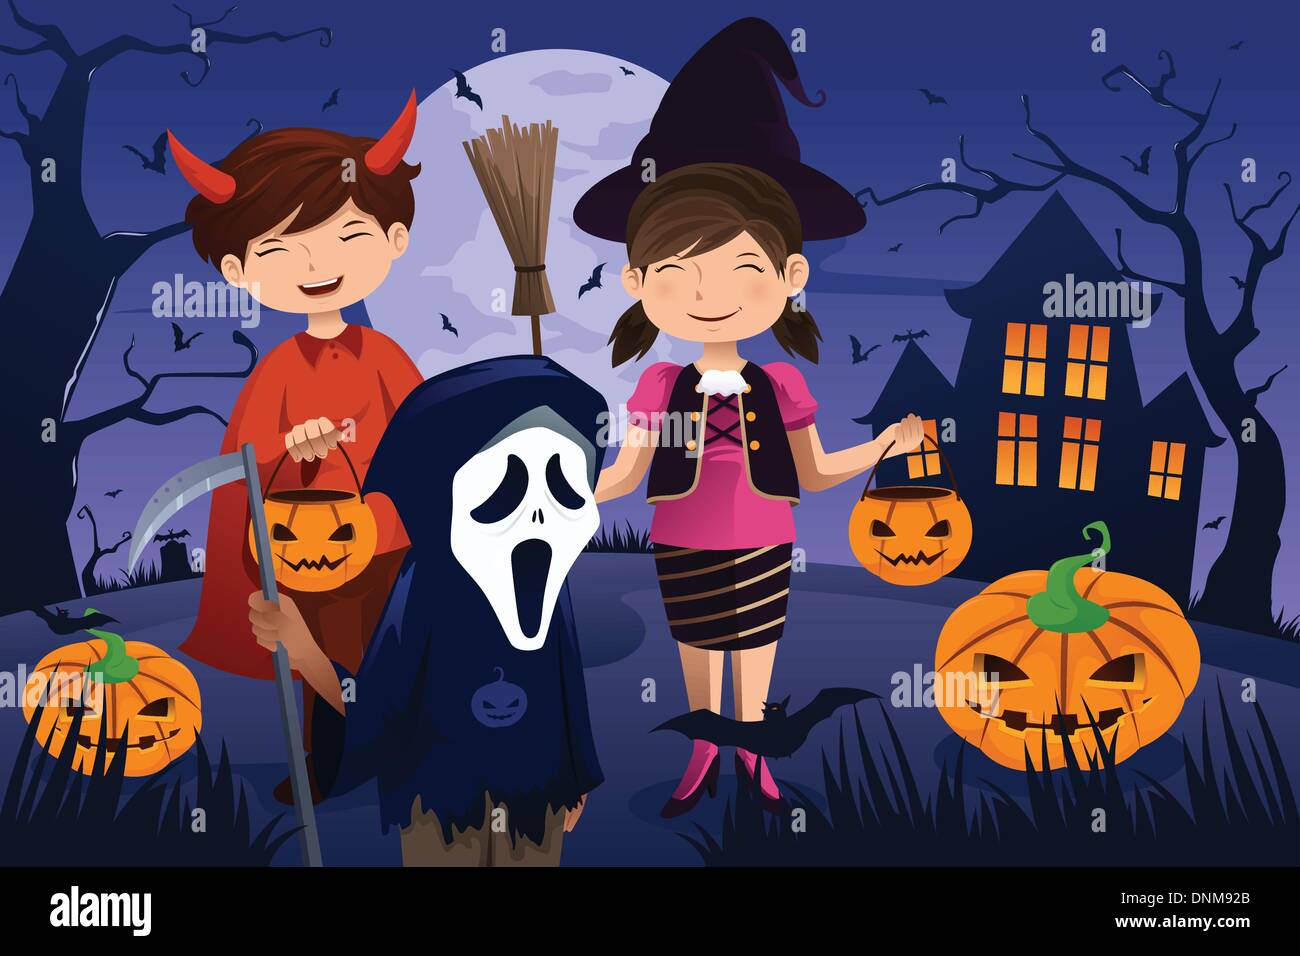 Una illustrazione vettoriale di bambini vestiti con costumi trucco o trattare durante il periodo di Halloween Illustrazione Vettoriale